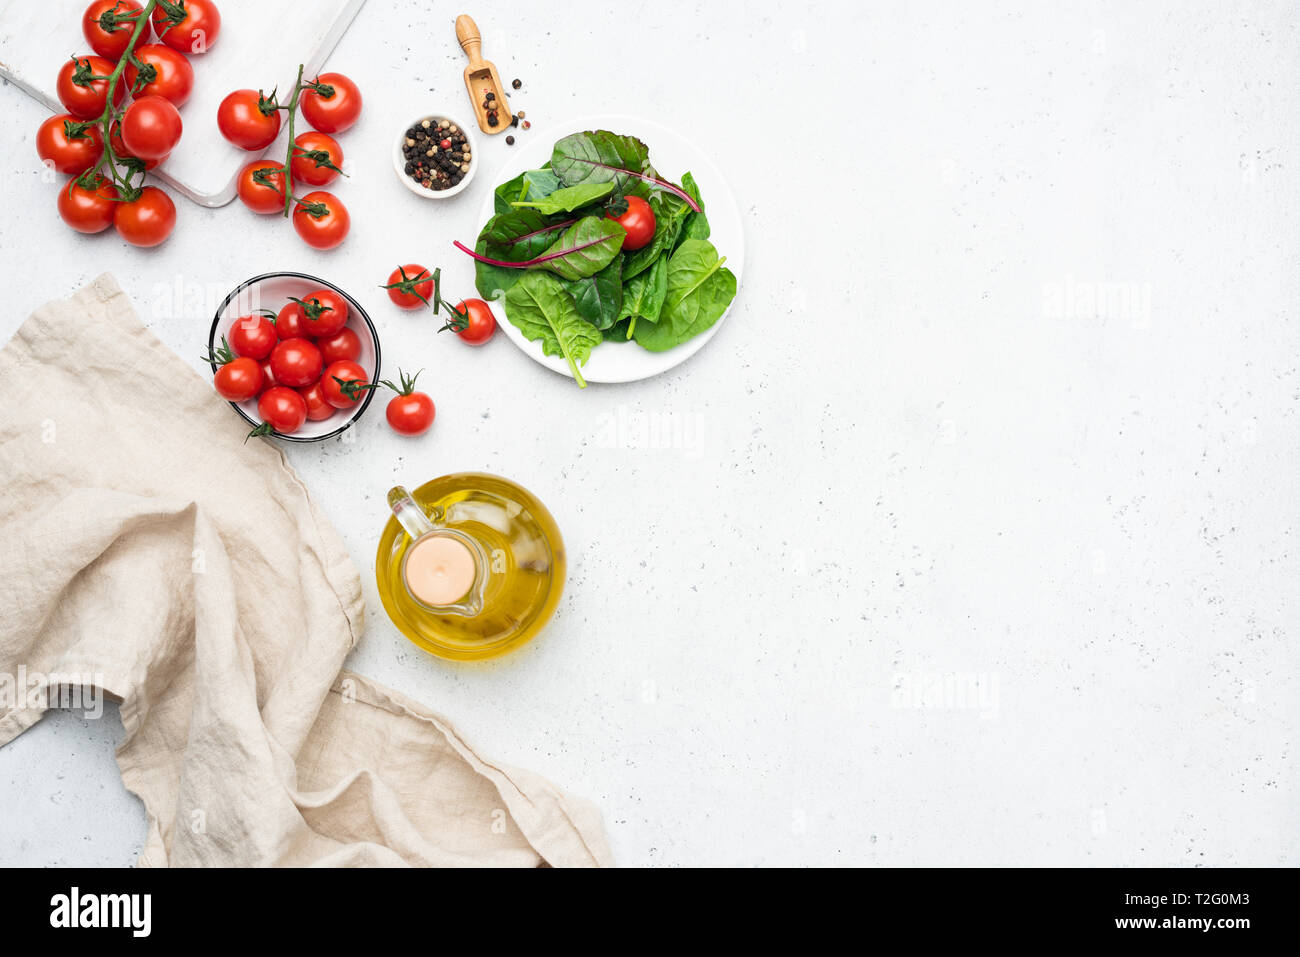 Cucina Italiana ingredienti alimentari, cucina fresca insalata estiva ingredienti e spezie. Copia spazio per il testo Foto Stock